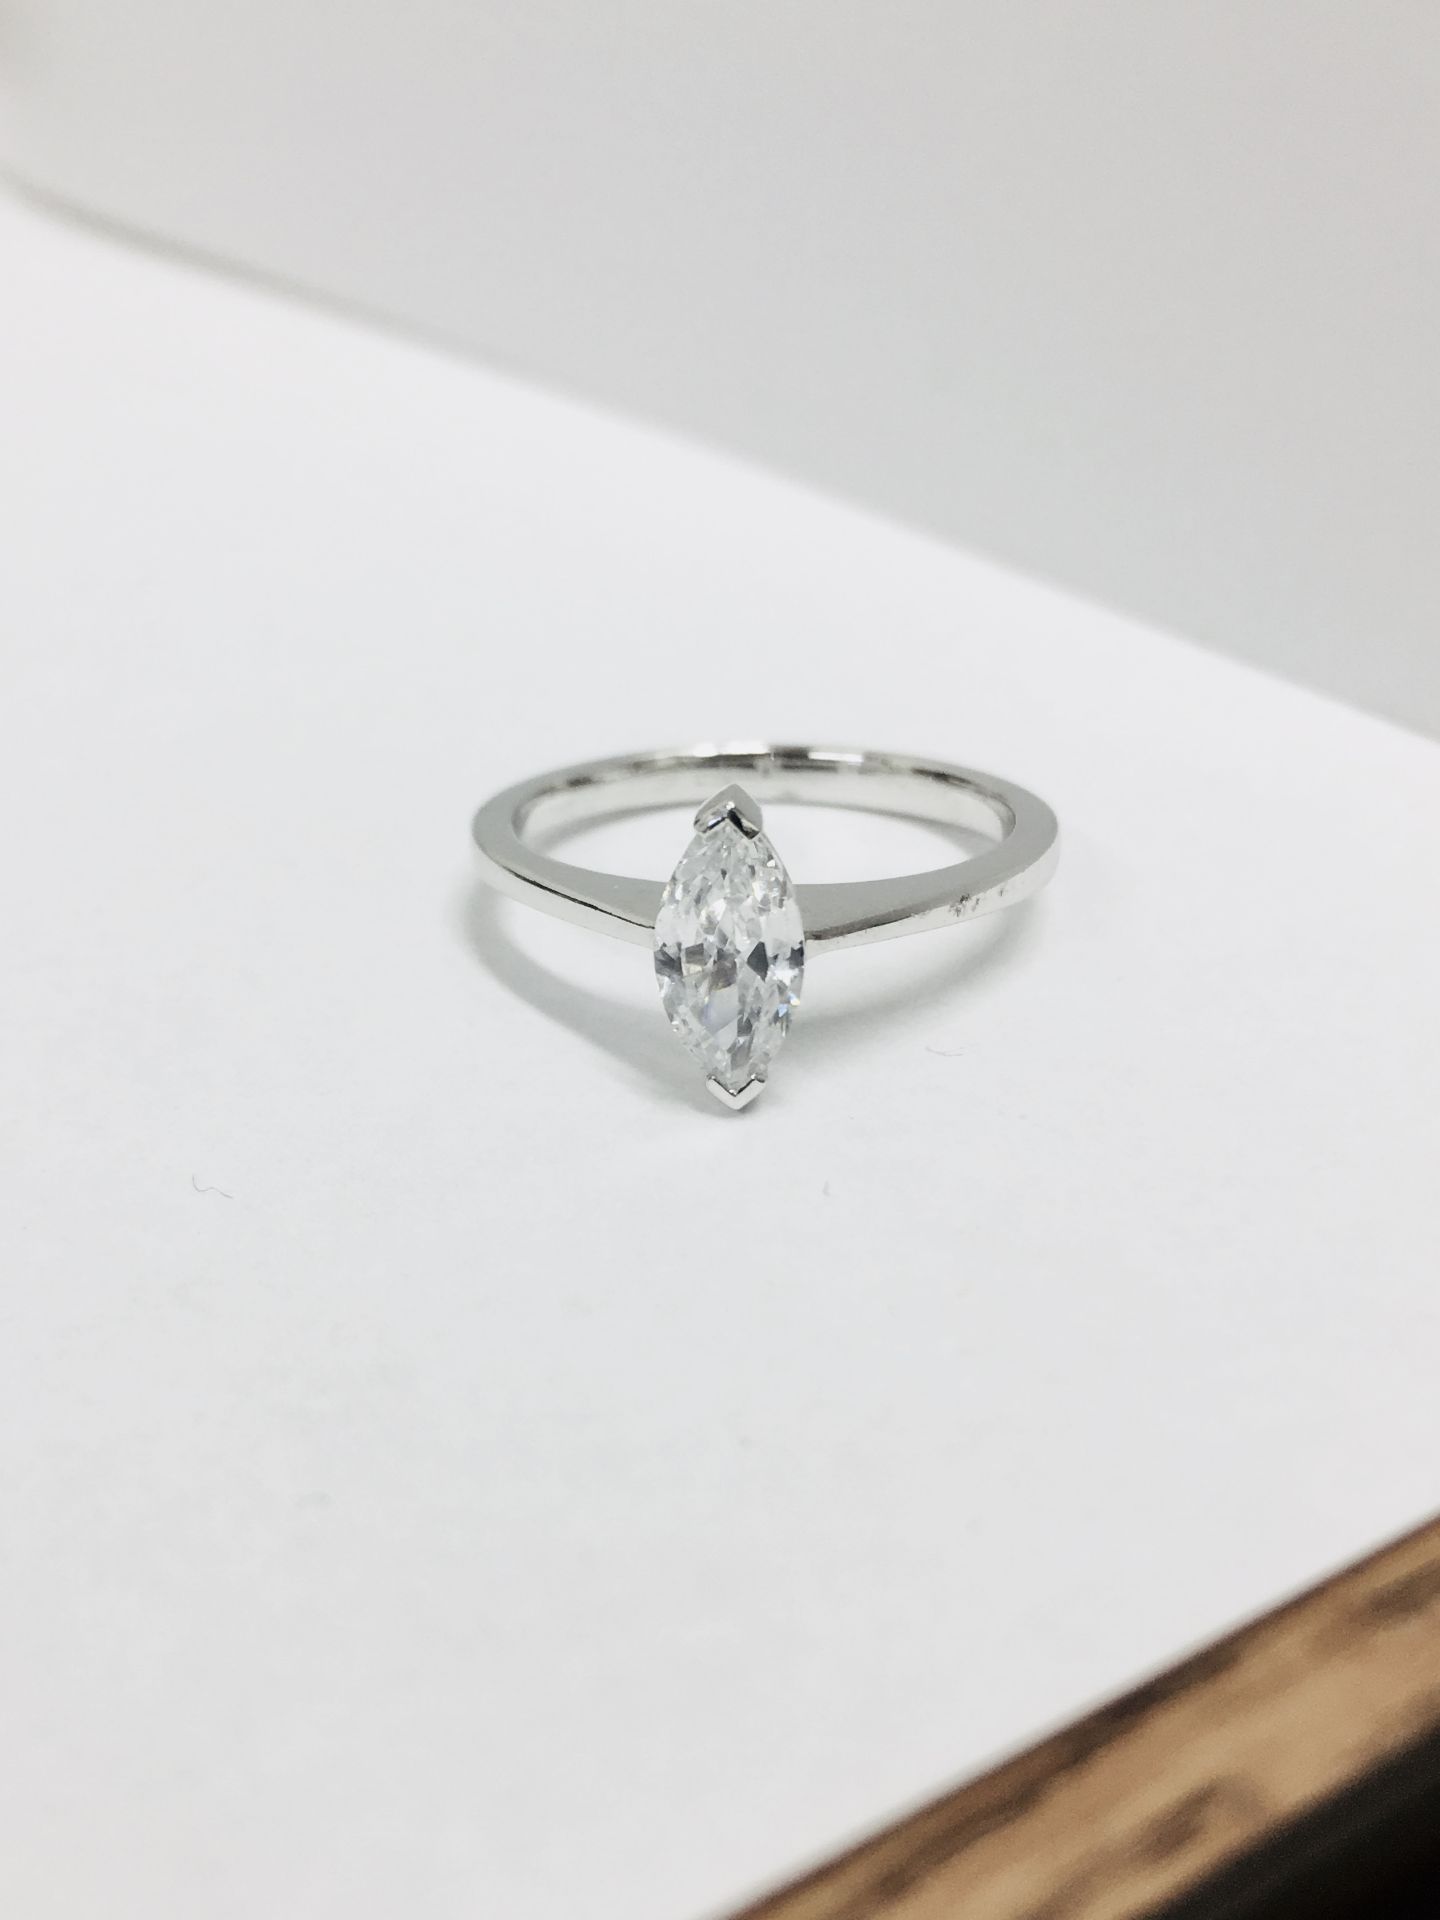 Platinum Marquis diamond soliaire ring,0.35ct marquis si clarity i colour,2.9gms platinum mount